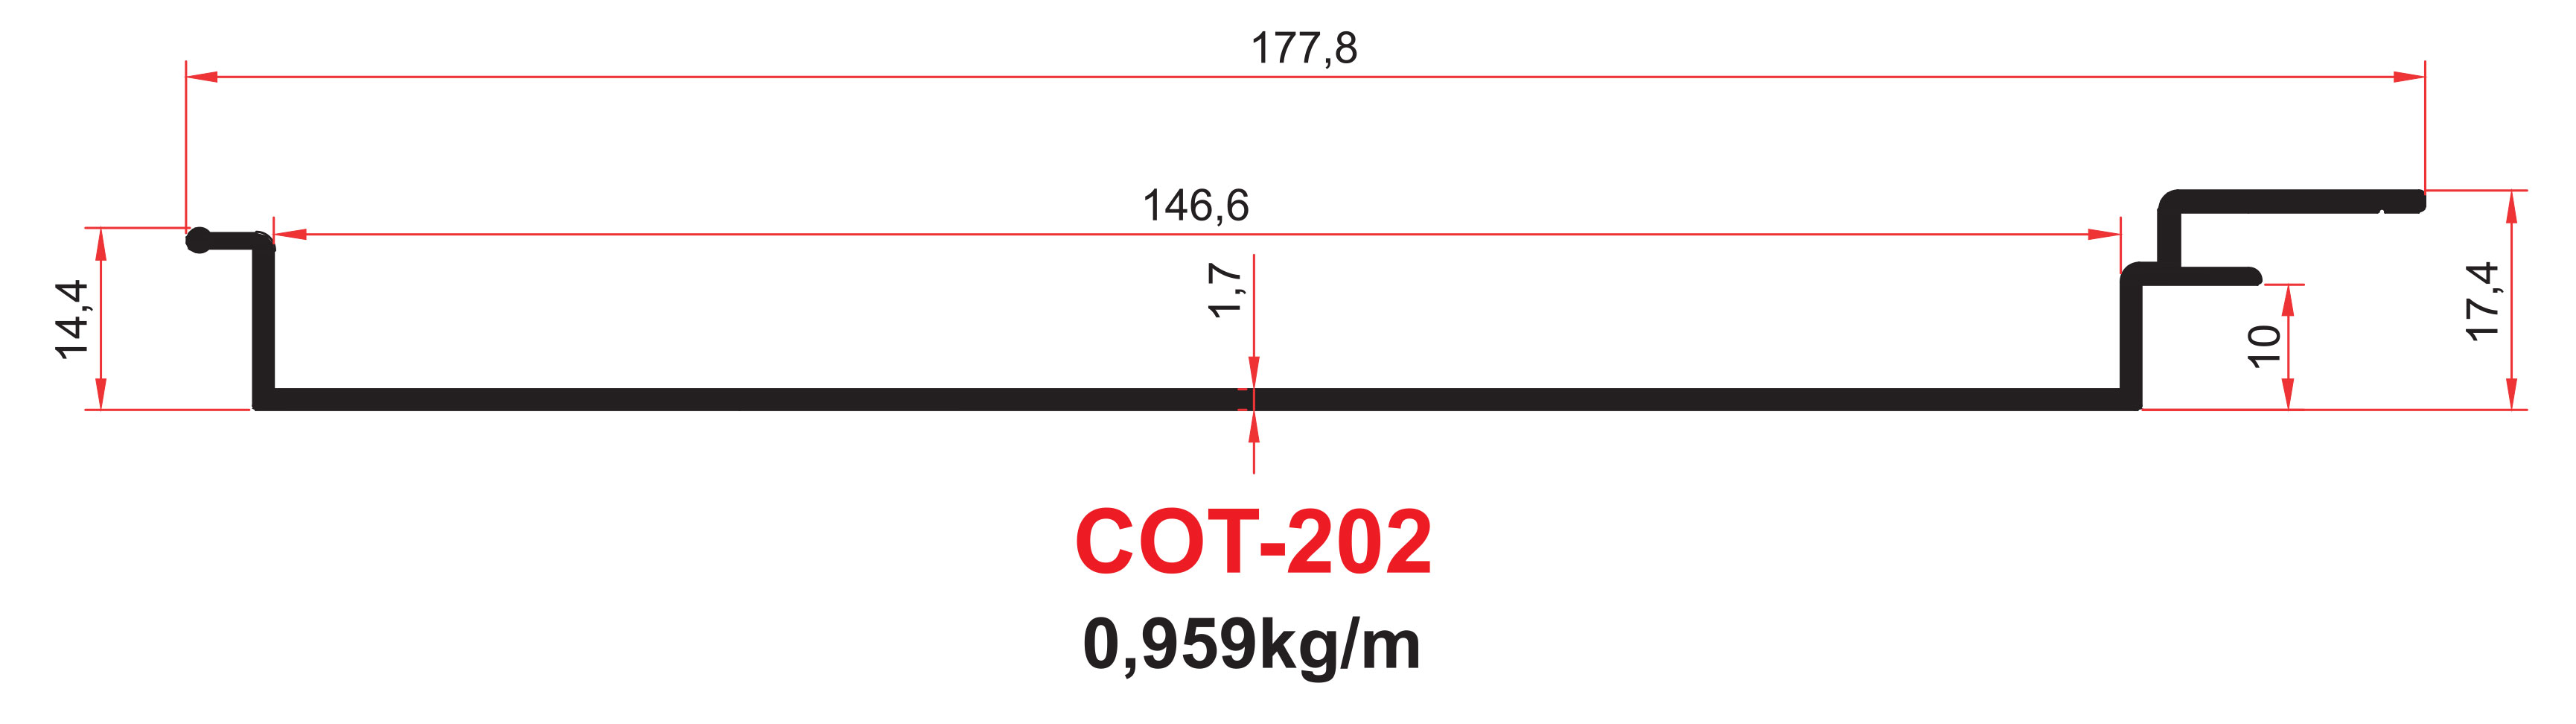 COT-202